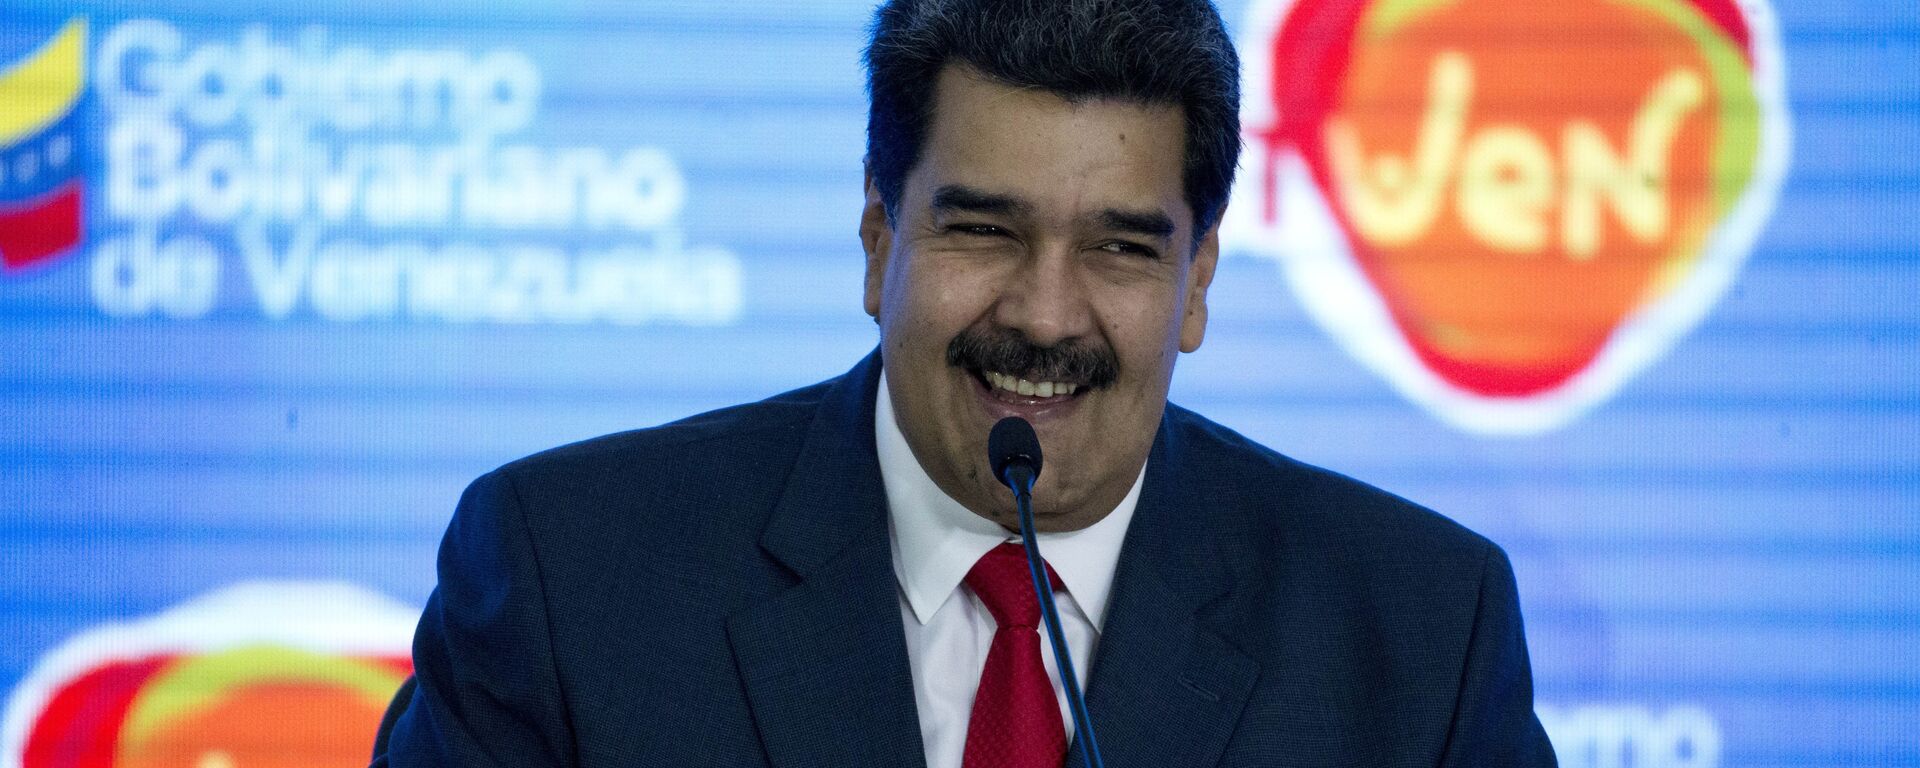 Nicolás Maduro, presidente de Venezuela - Sputnik Mundo, 1920, 11.12.2021